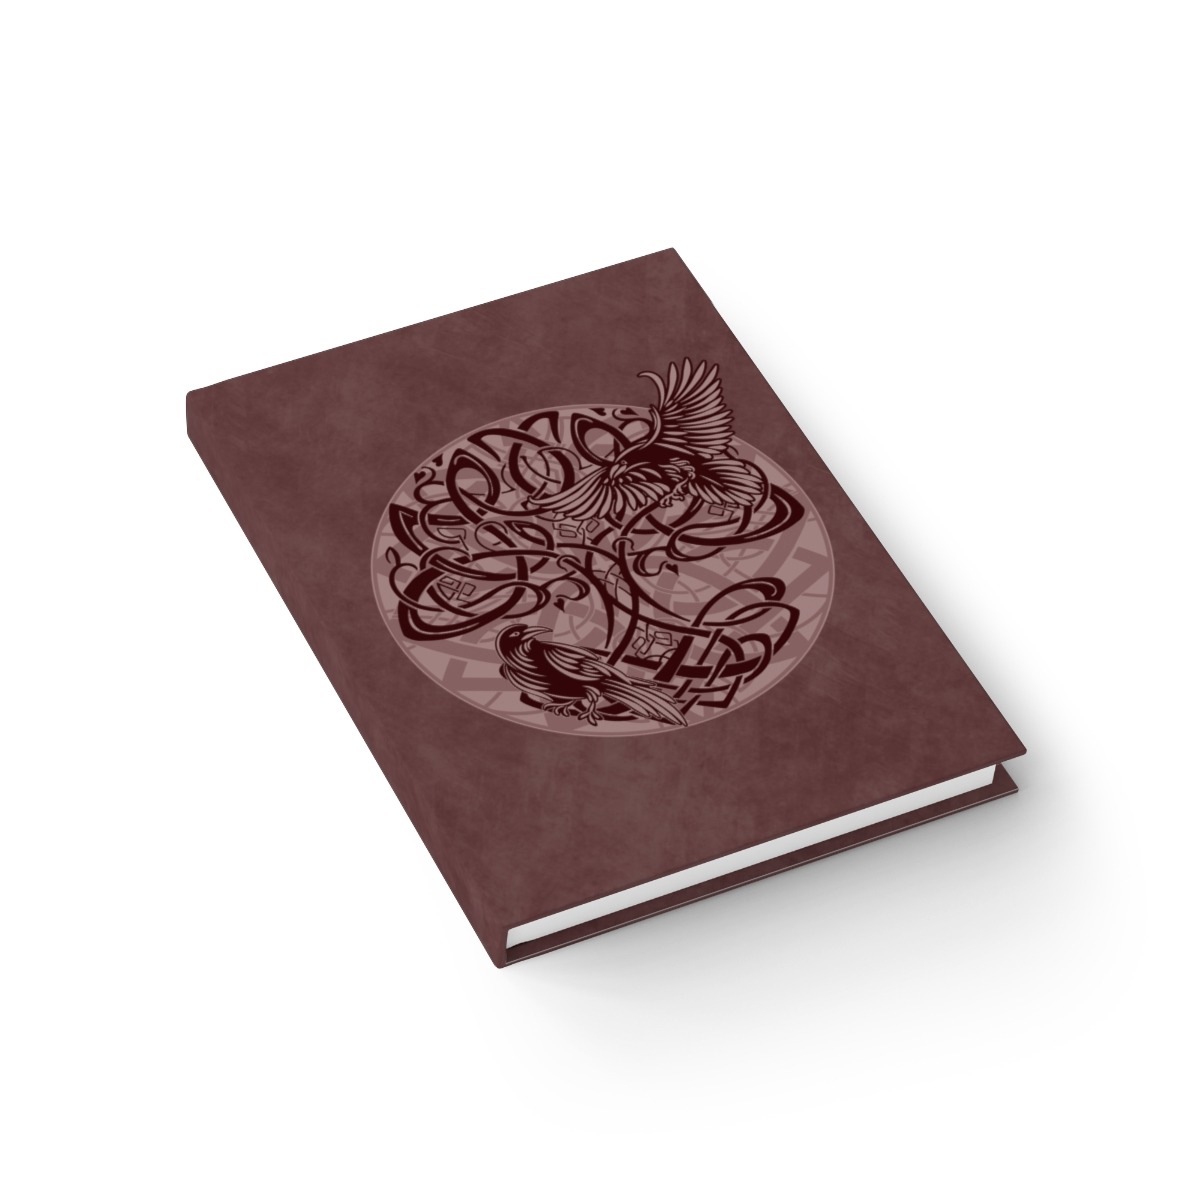 Maroon Yggdrasil Ravens Ruled Line Hardcover Journal